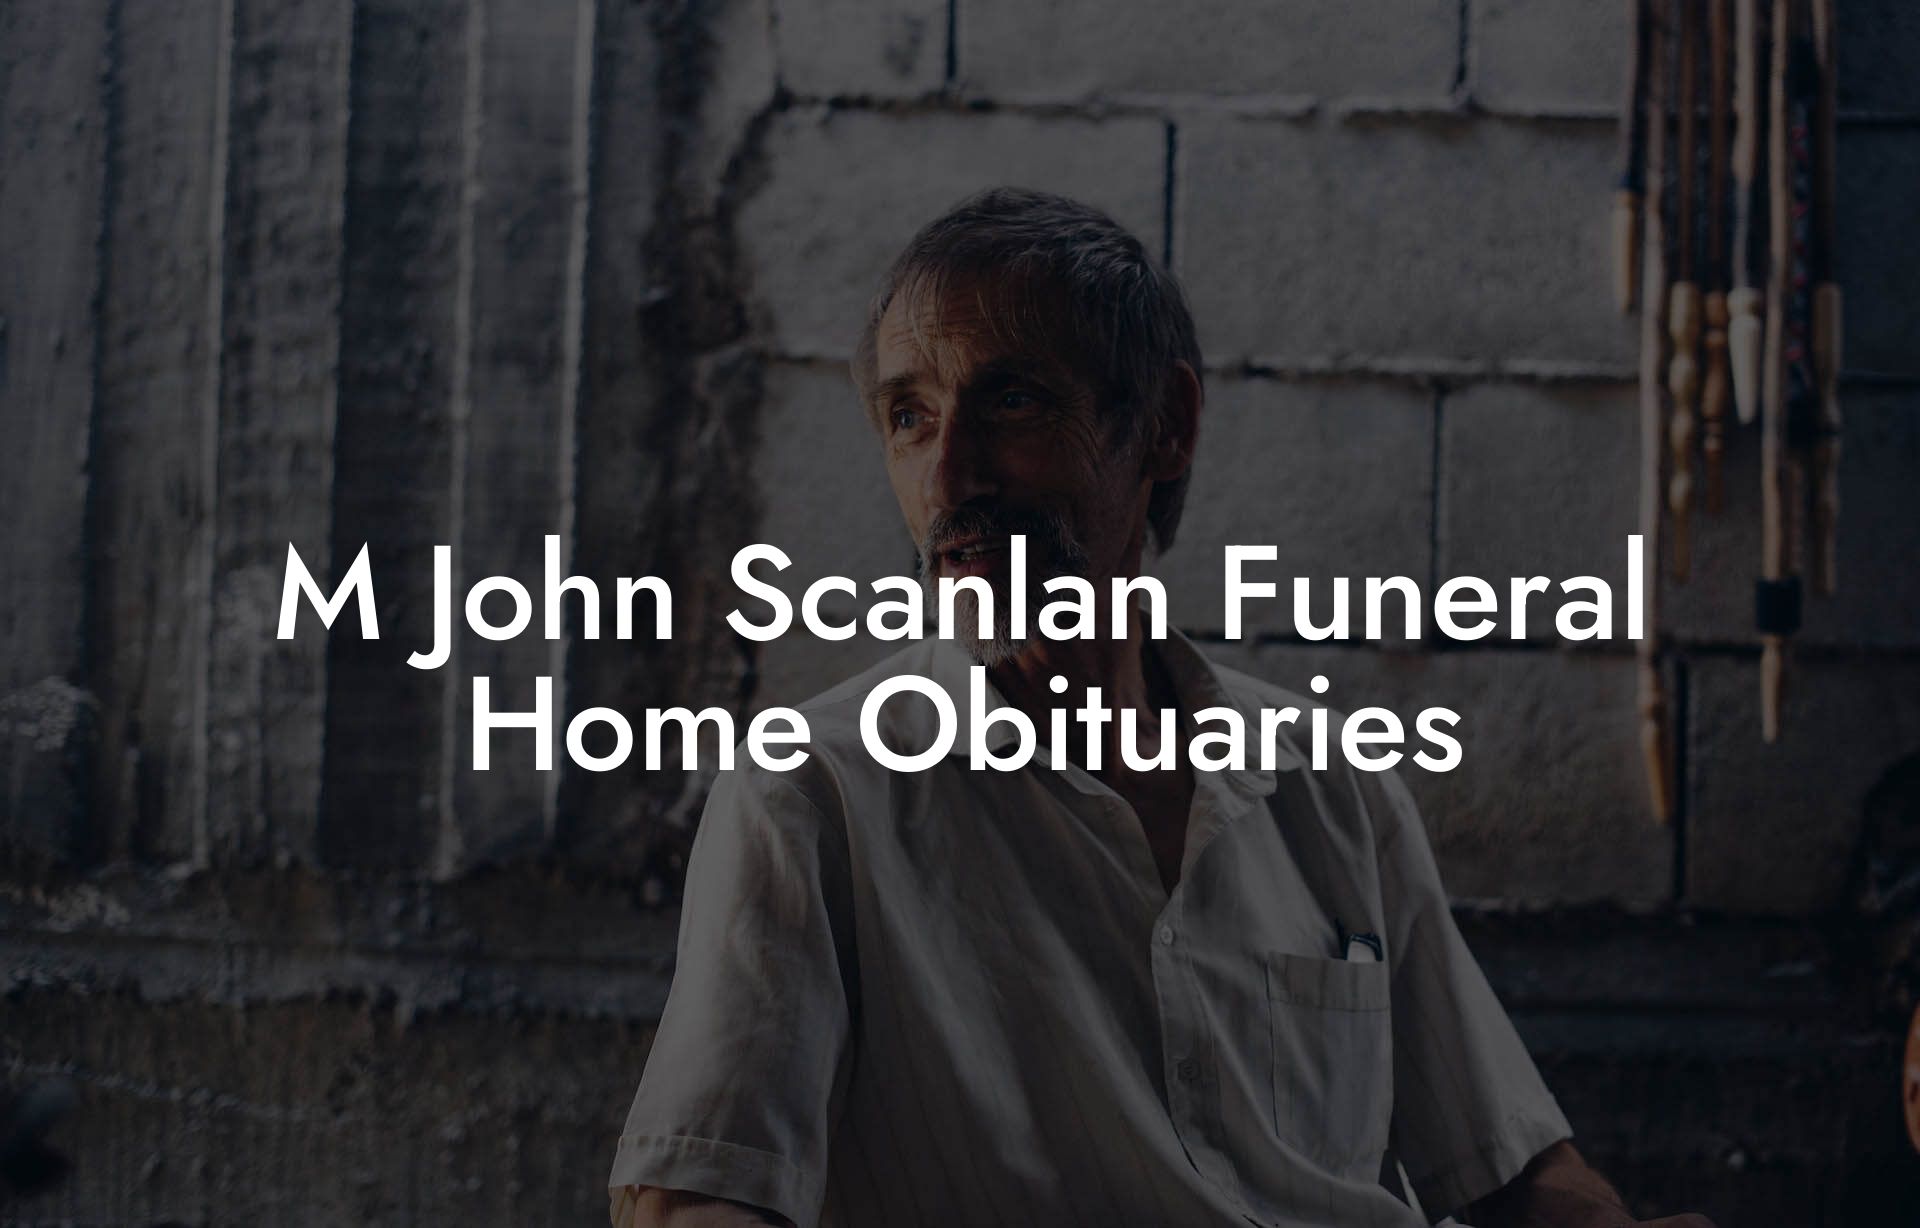 M John Scanlan Funeral Home Obituaries